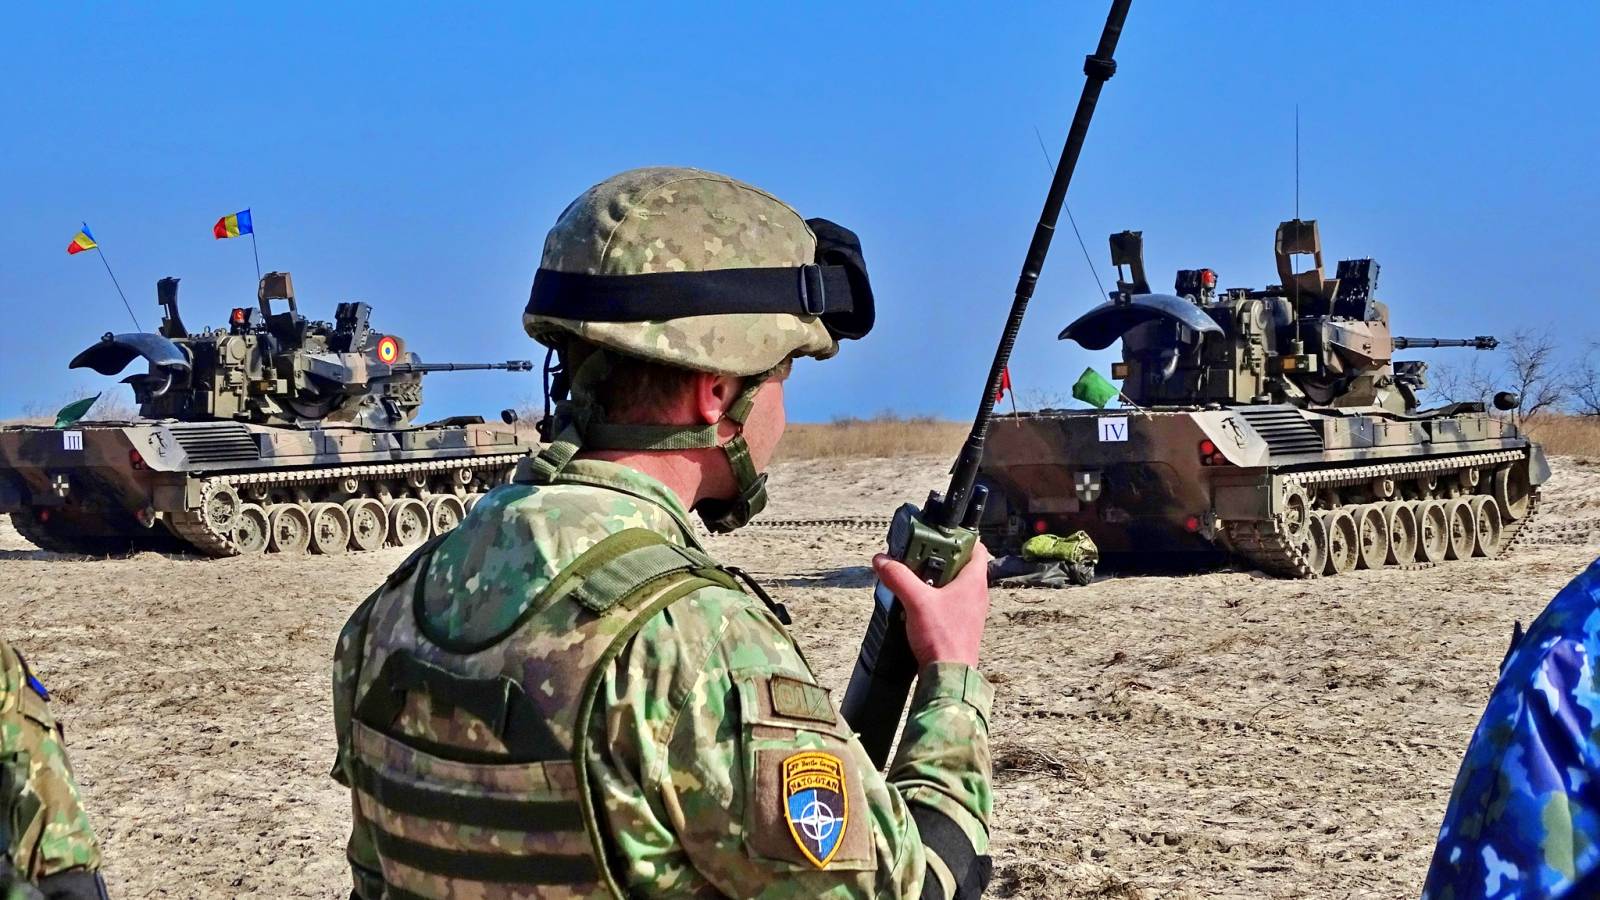 Het Ministerie van Defensie informeert de Roemenen over de LAATSTE UUR-acties van de Roemeense legersoldaten